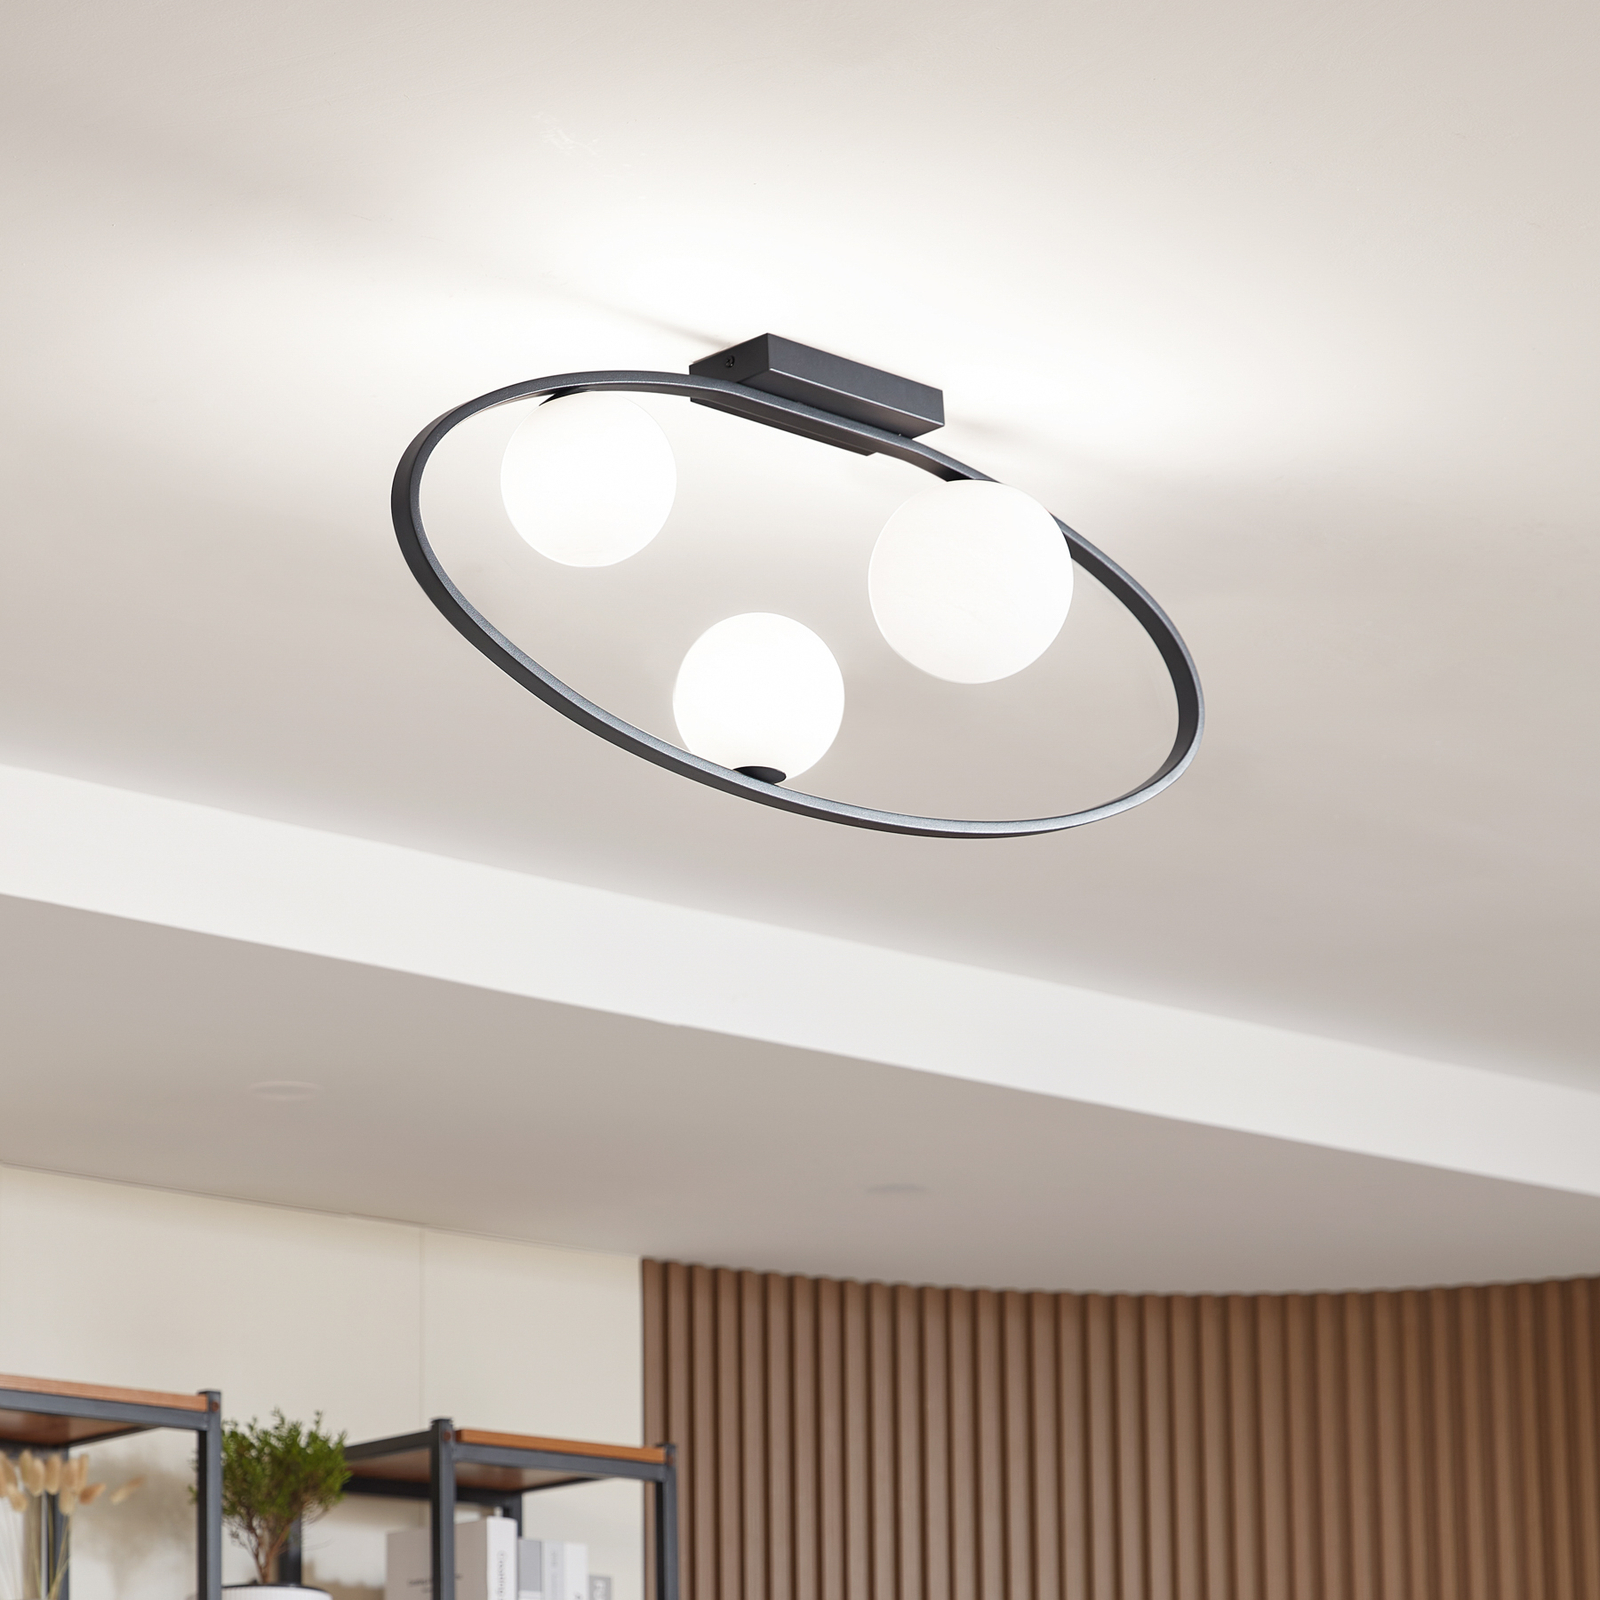 Lucande ceiling light Kulka, 3-bulb, black, glass, G9